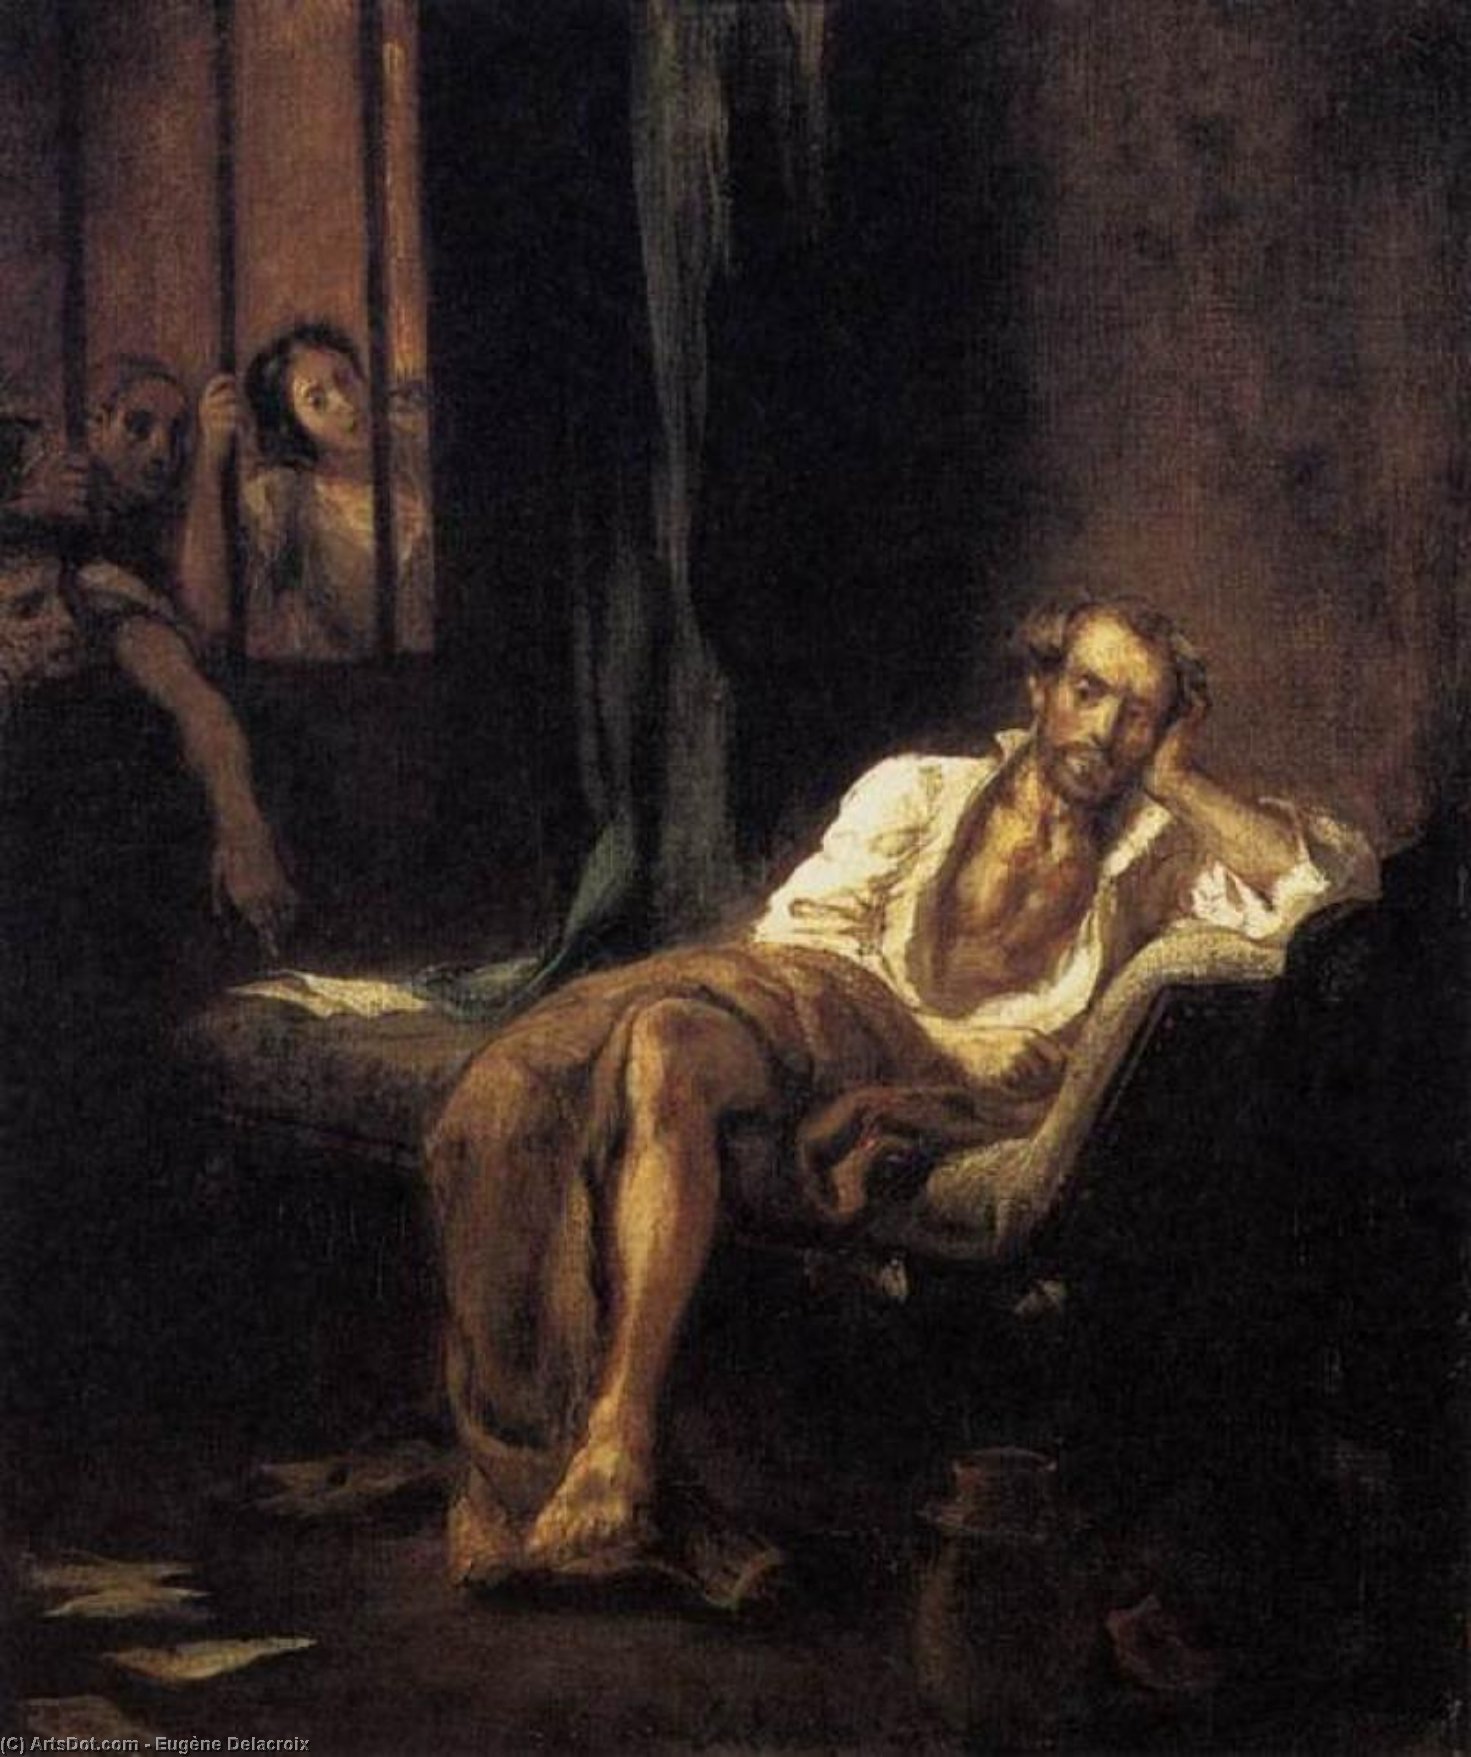 WikiOO.org - אנציקלופדיה לאמנויות יפות - ציור, יצירות אמנות Eugène Delacroix - Tasso in the Madhouse